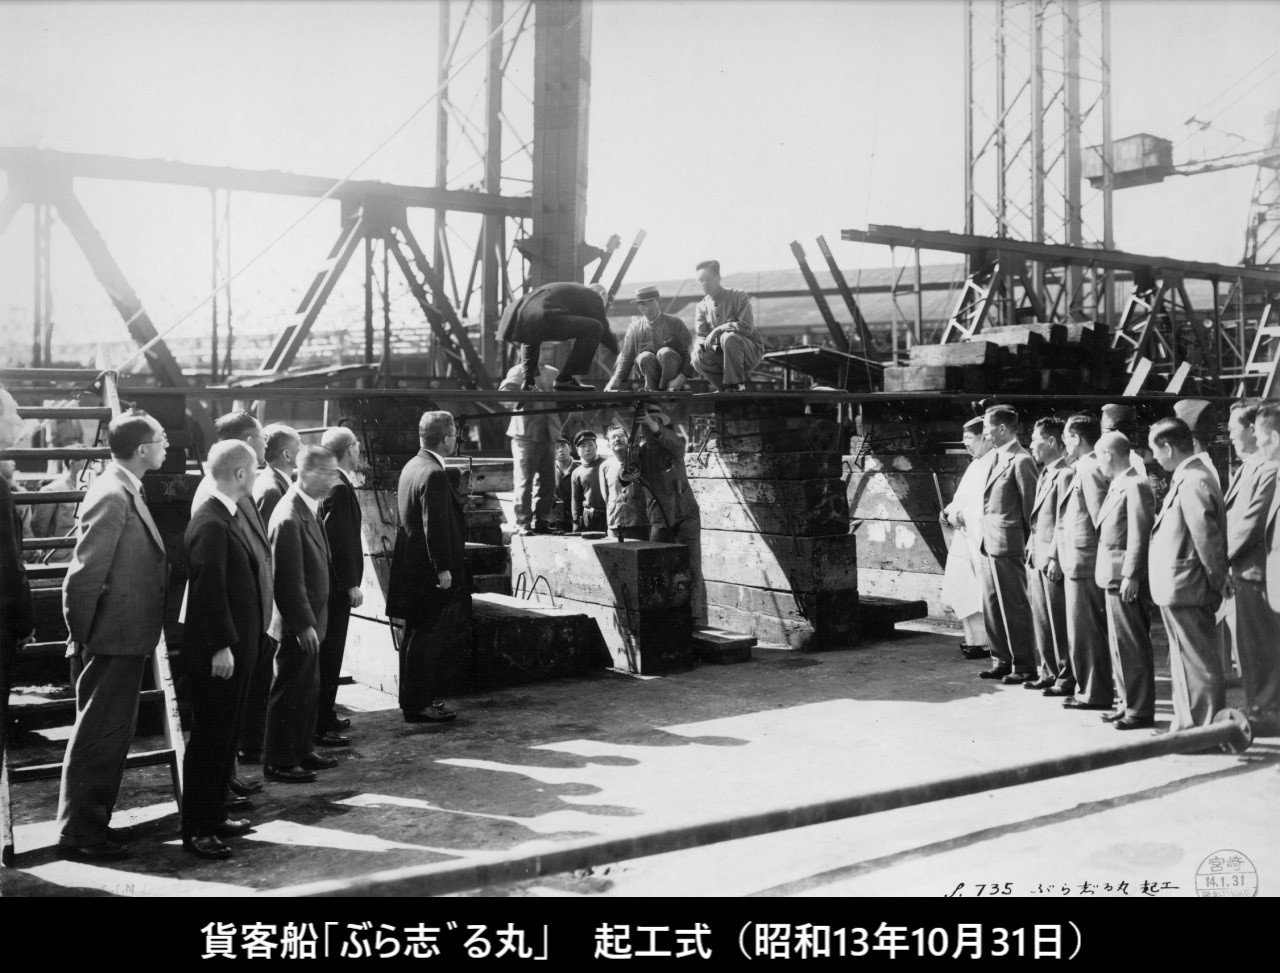 大阪商船「ぶら志゛る丸」(初代)写真集 | デジタル造船資料館